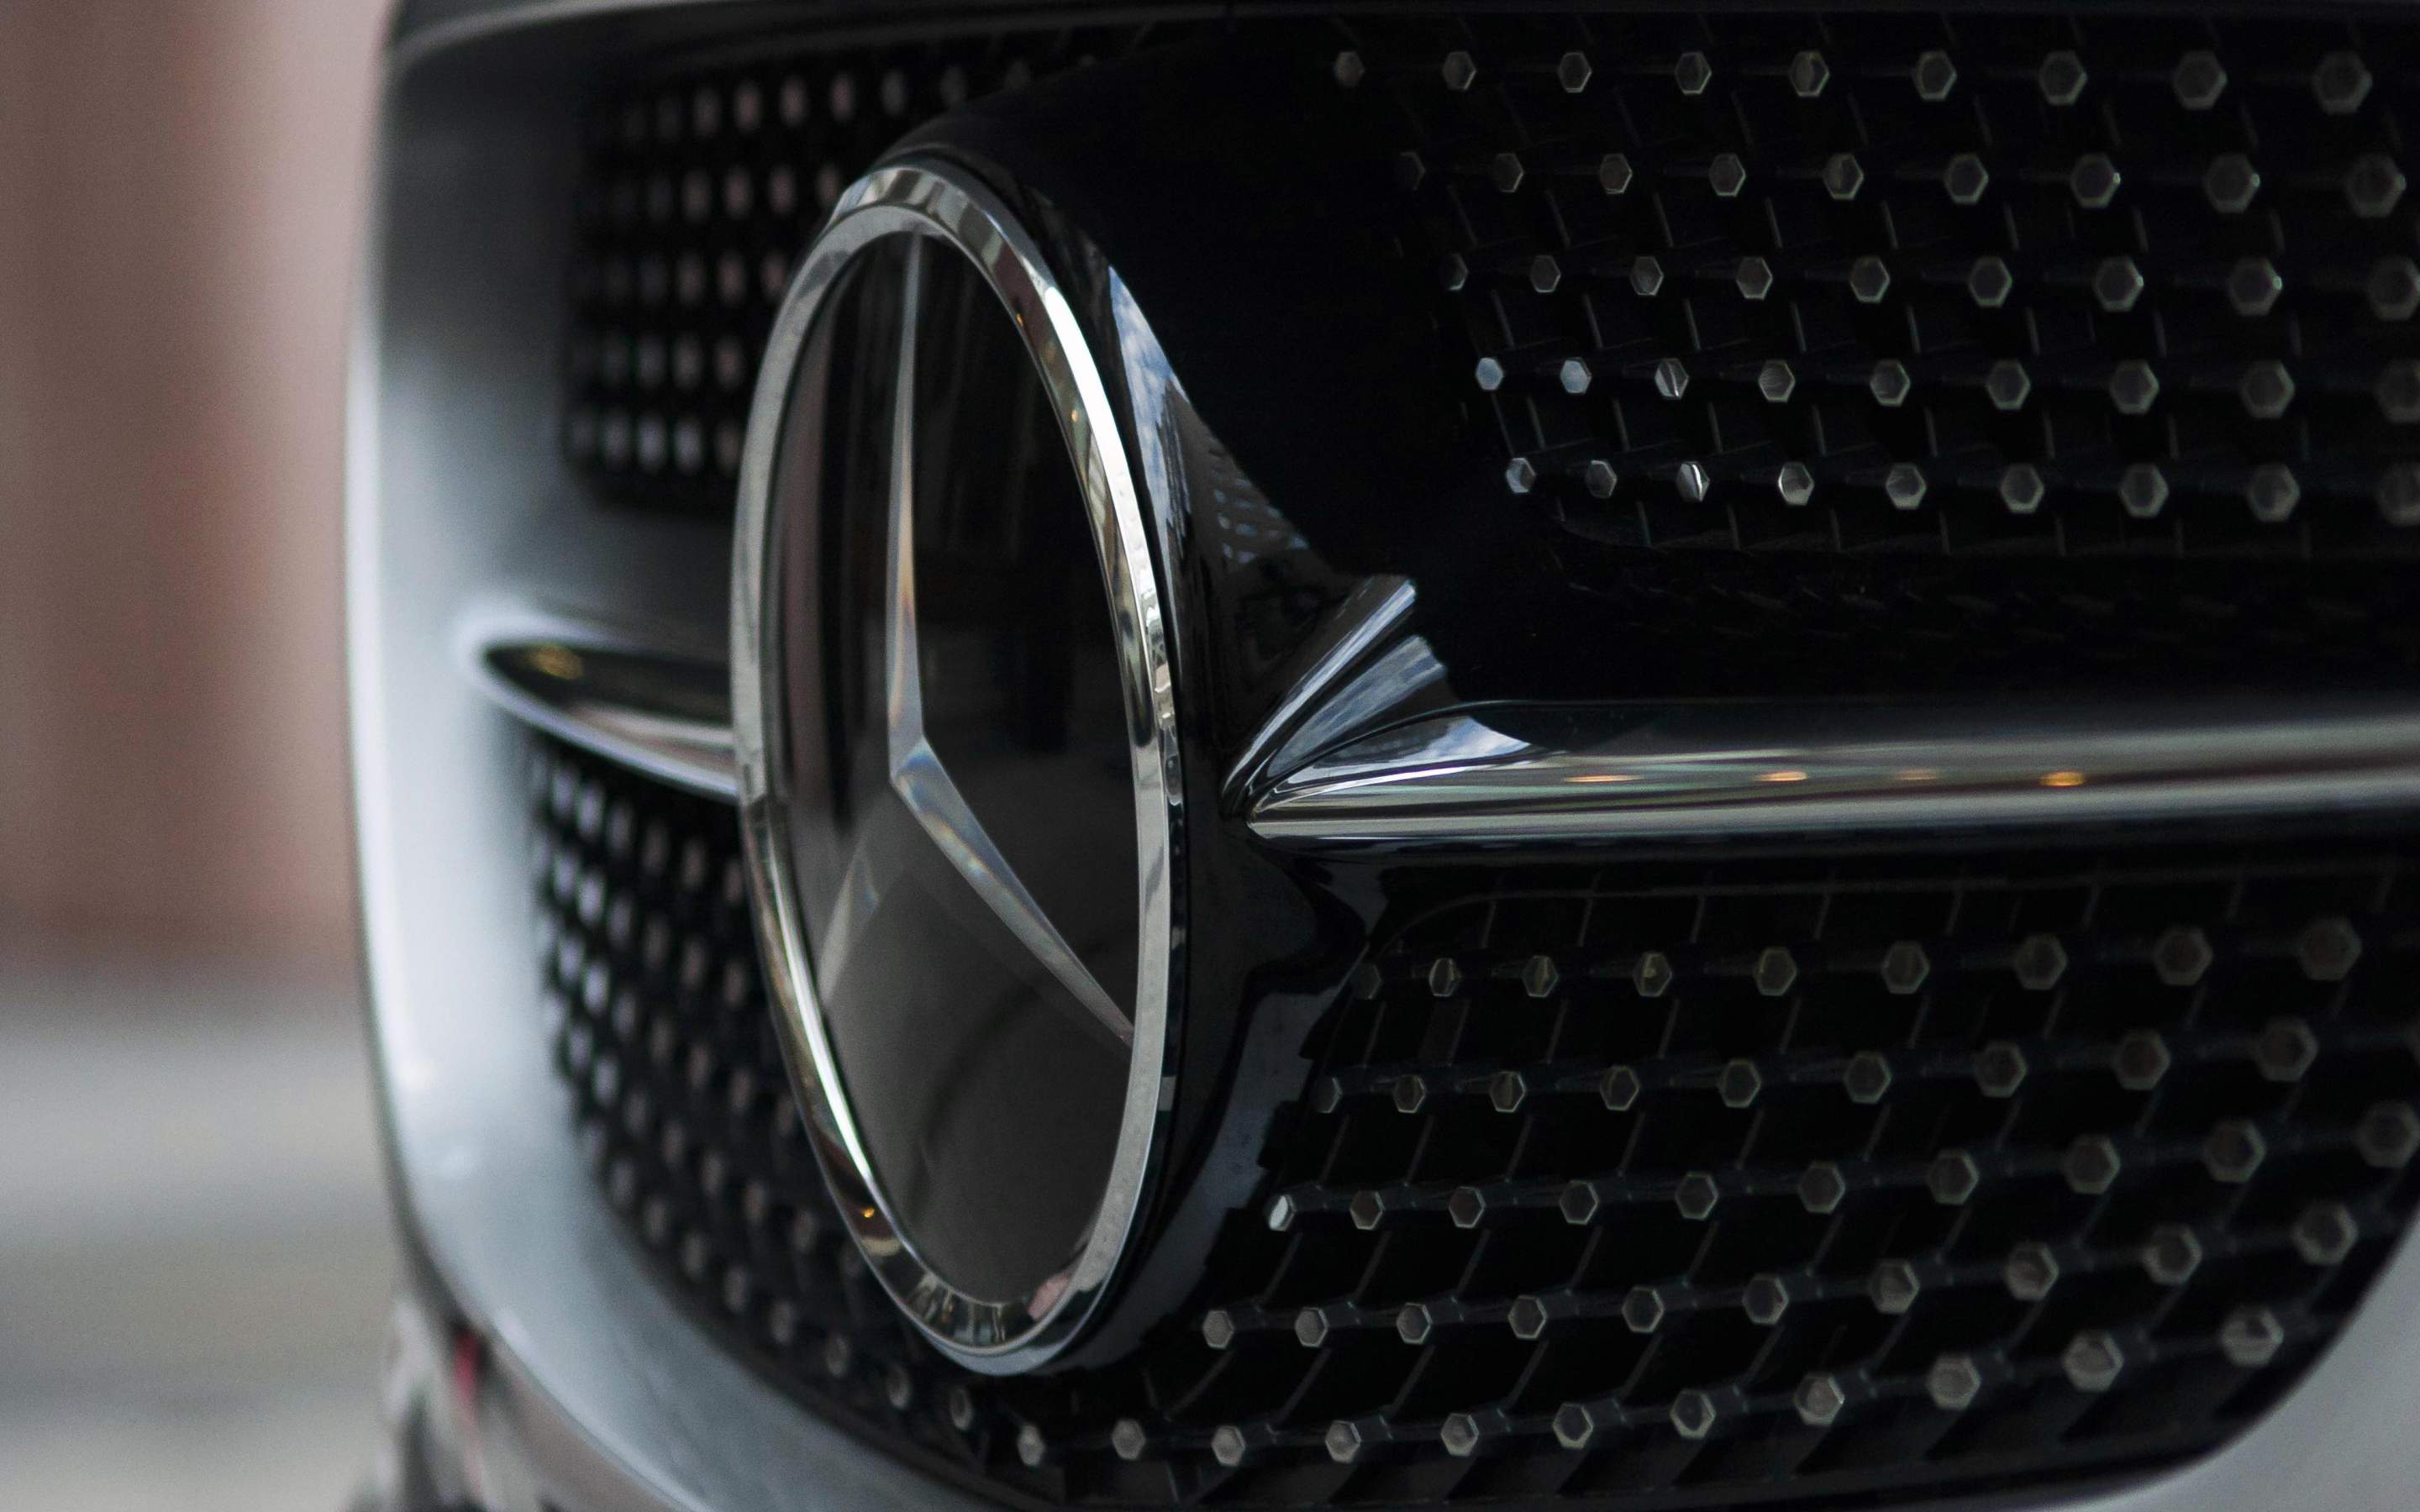 Download Mercedes Benz Logo Wallpaper Images #p0rf4 » masbradwall.com